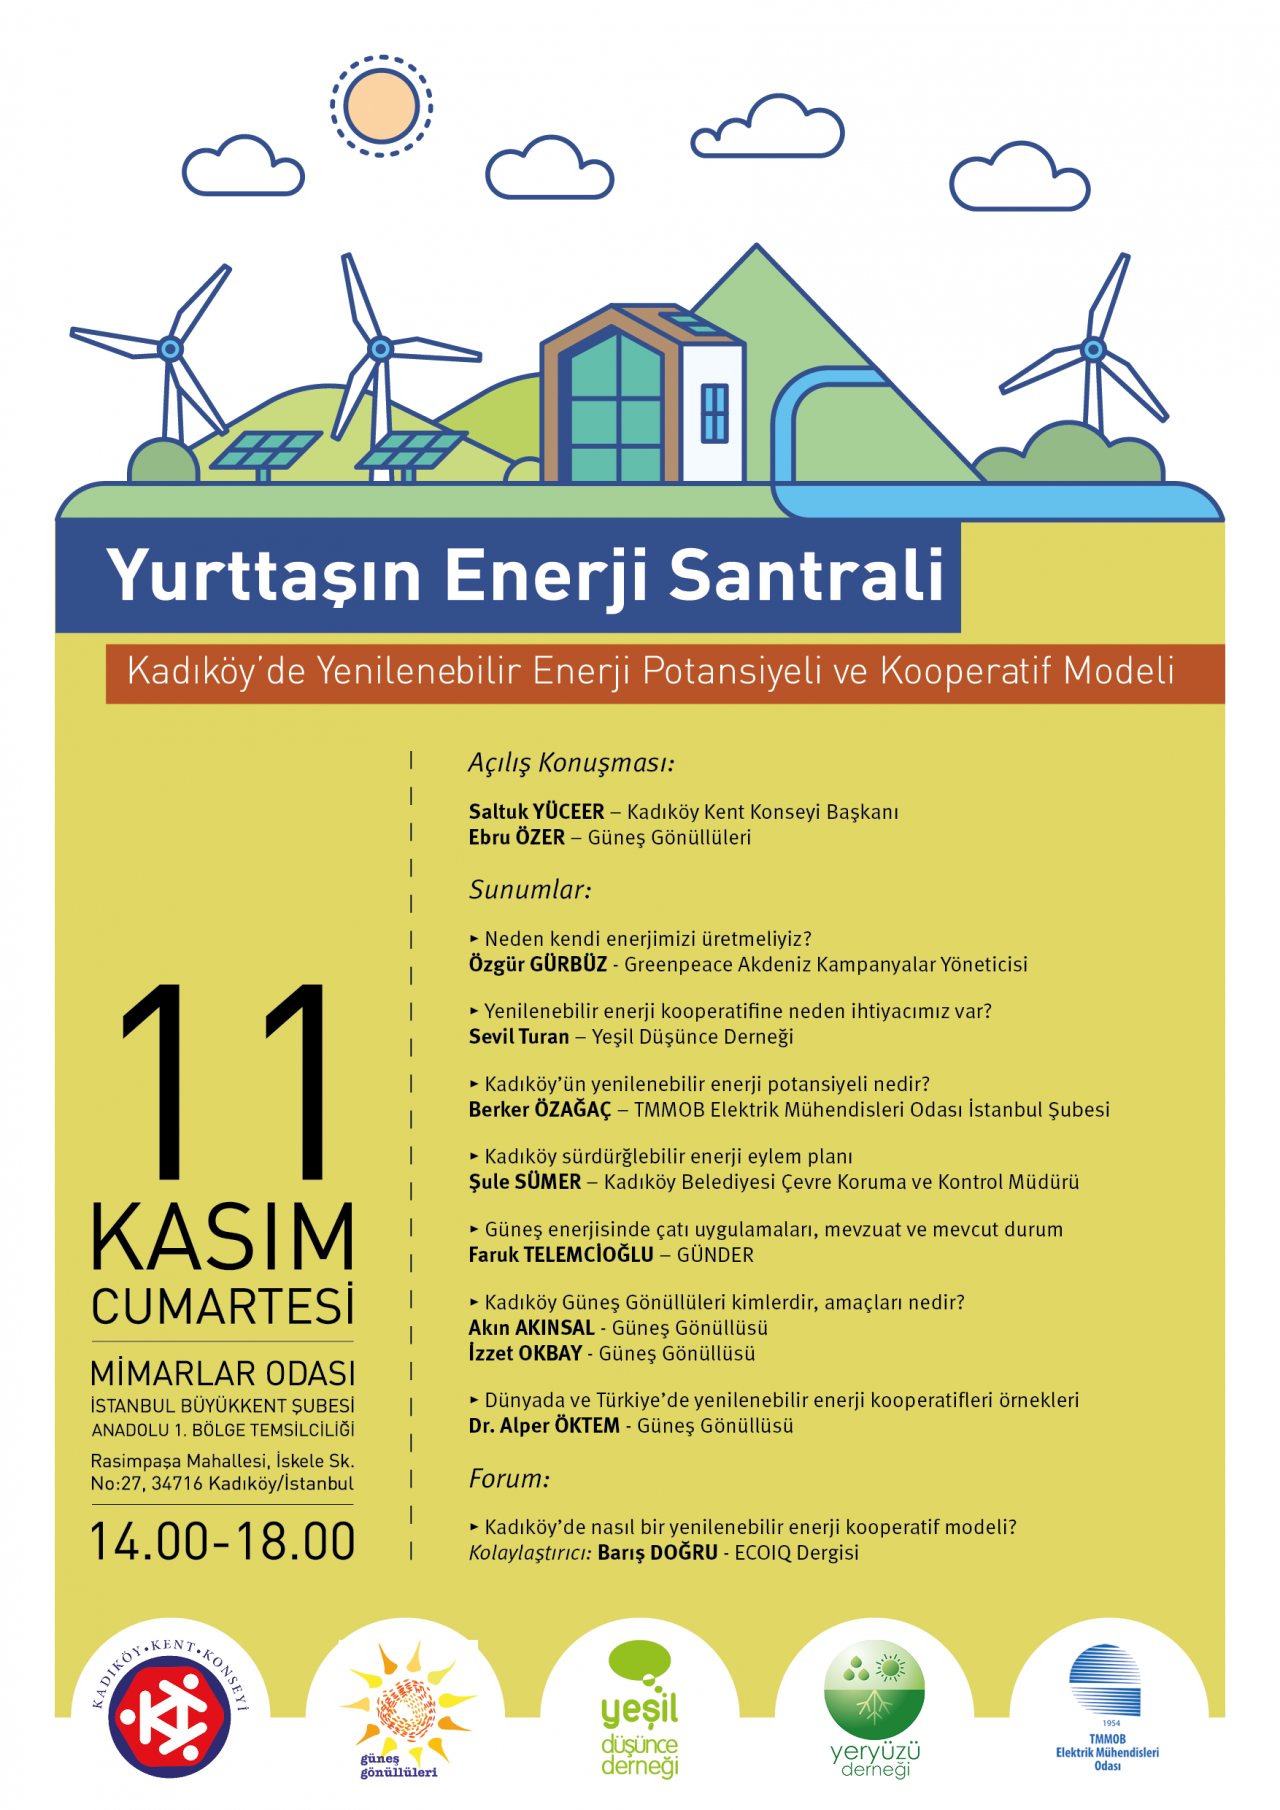 “Yurttaşın Enerji Santrali, Kadıköy’de Yenilenebilir Enerji Potansiyeli ve Kooperatif Modeli”